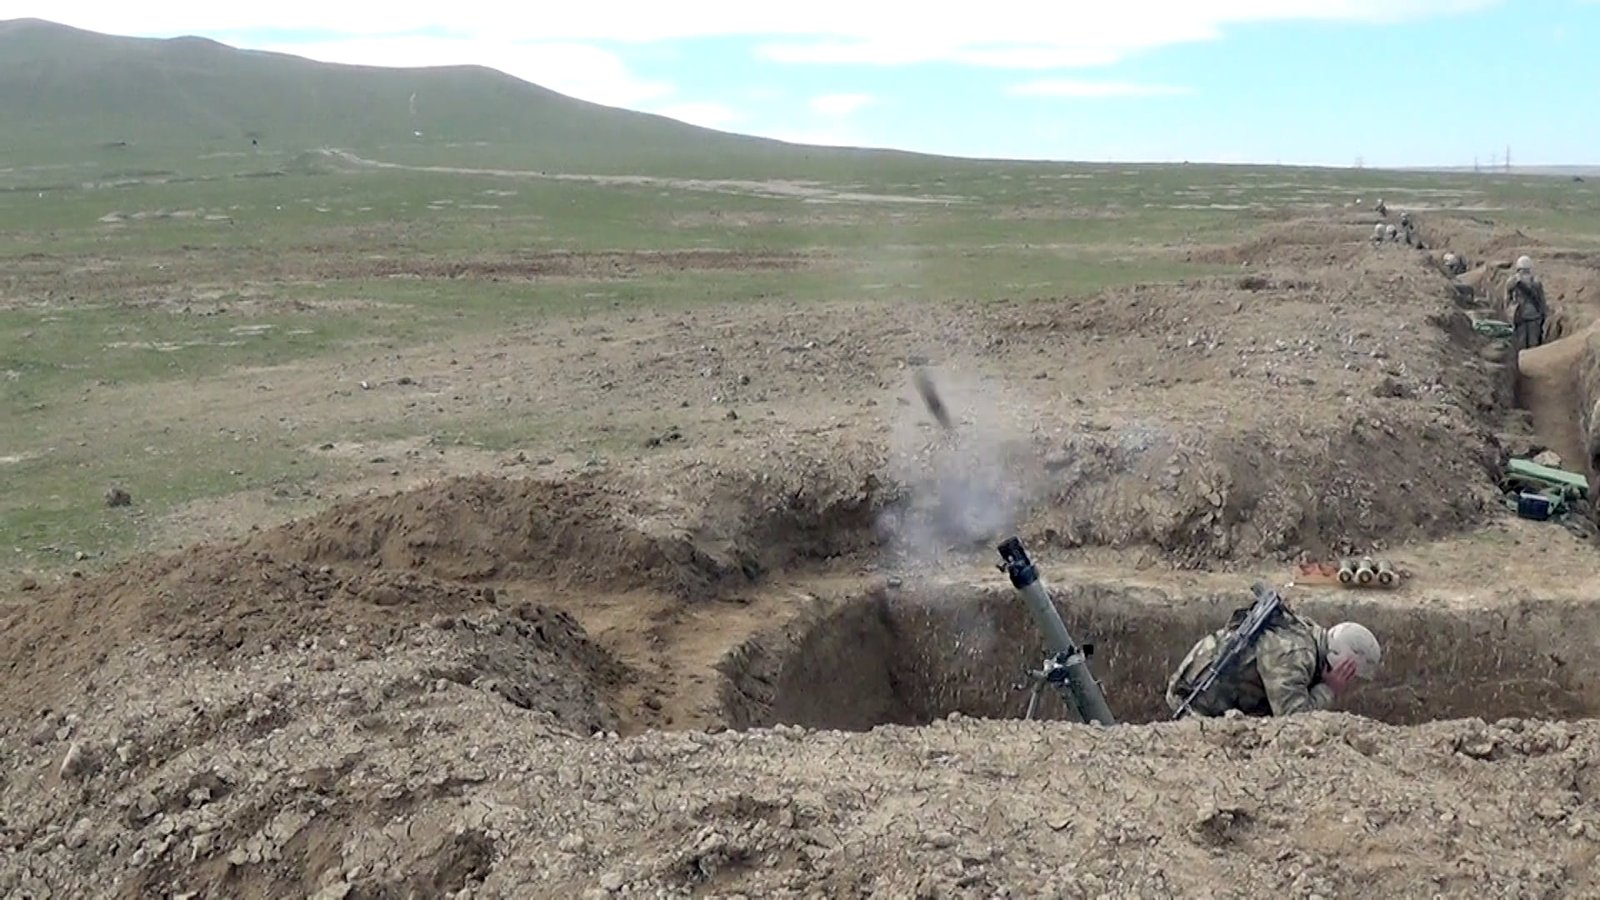 MN: Ermənistan silahlı qüvvələrinin bölmələri mövqelərimizi top və minaatanlardan atəşə tutmaqda davam edir